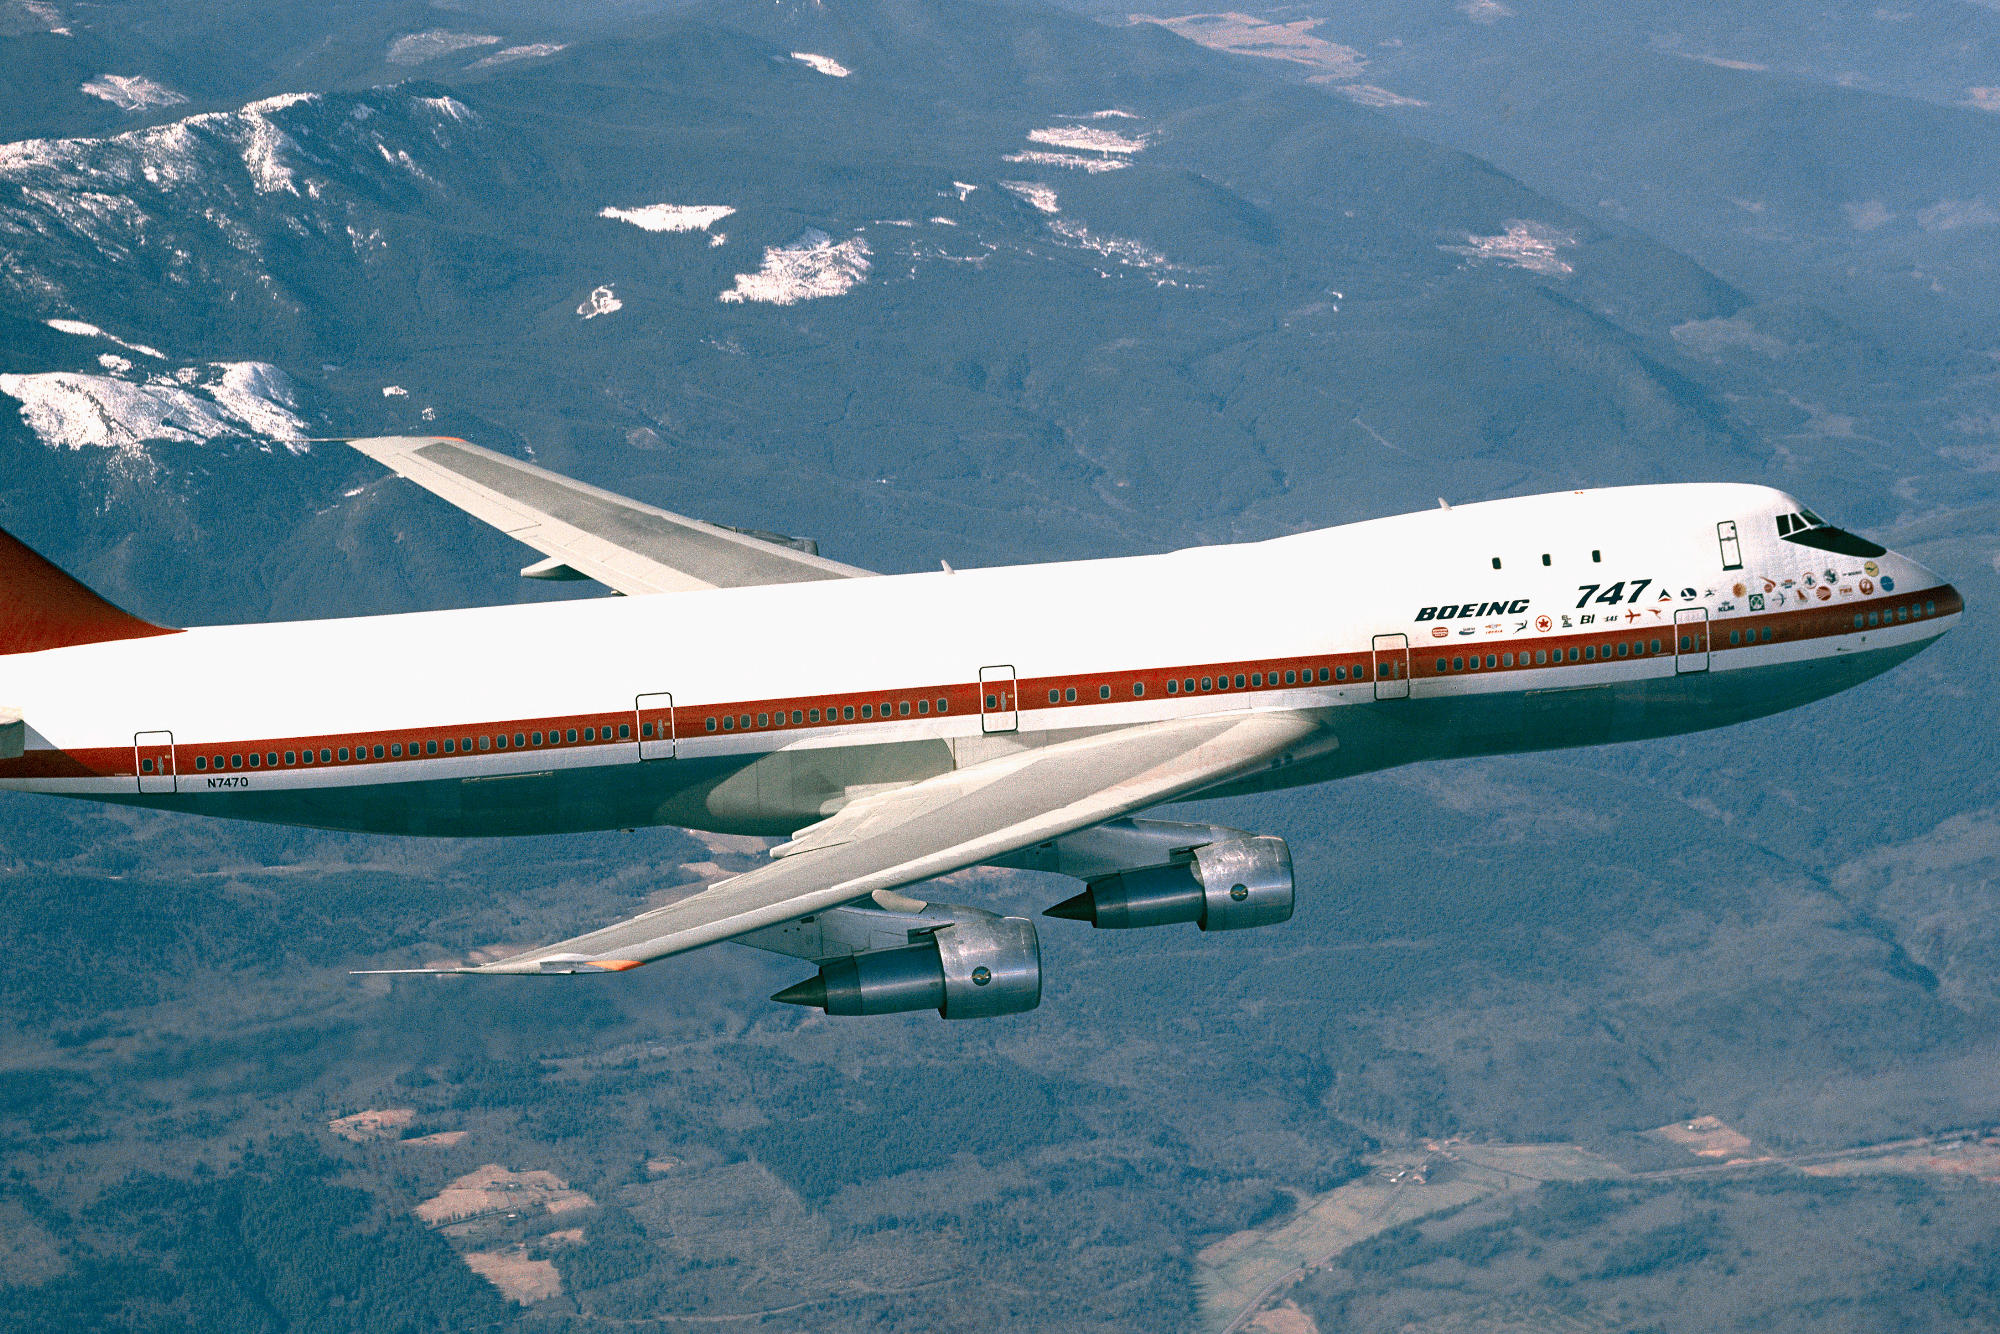 Breitling Navitimer B01 Chronograph Boeing 747